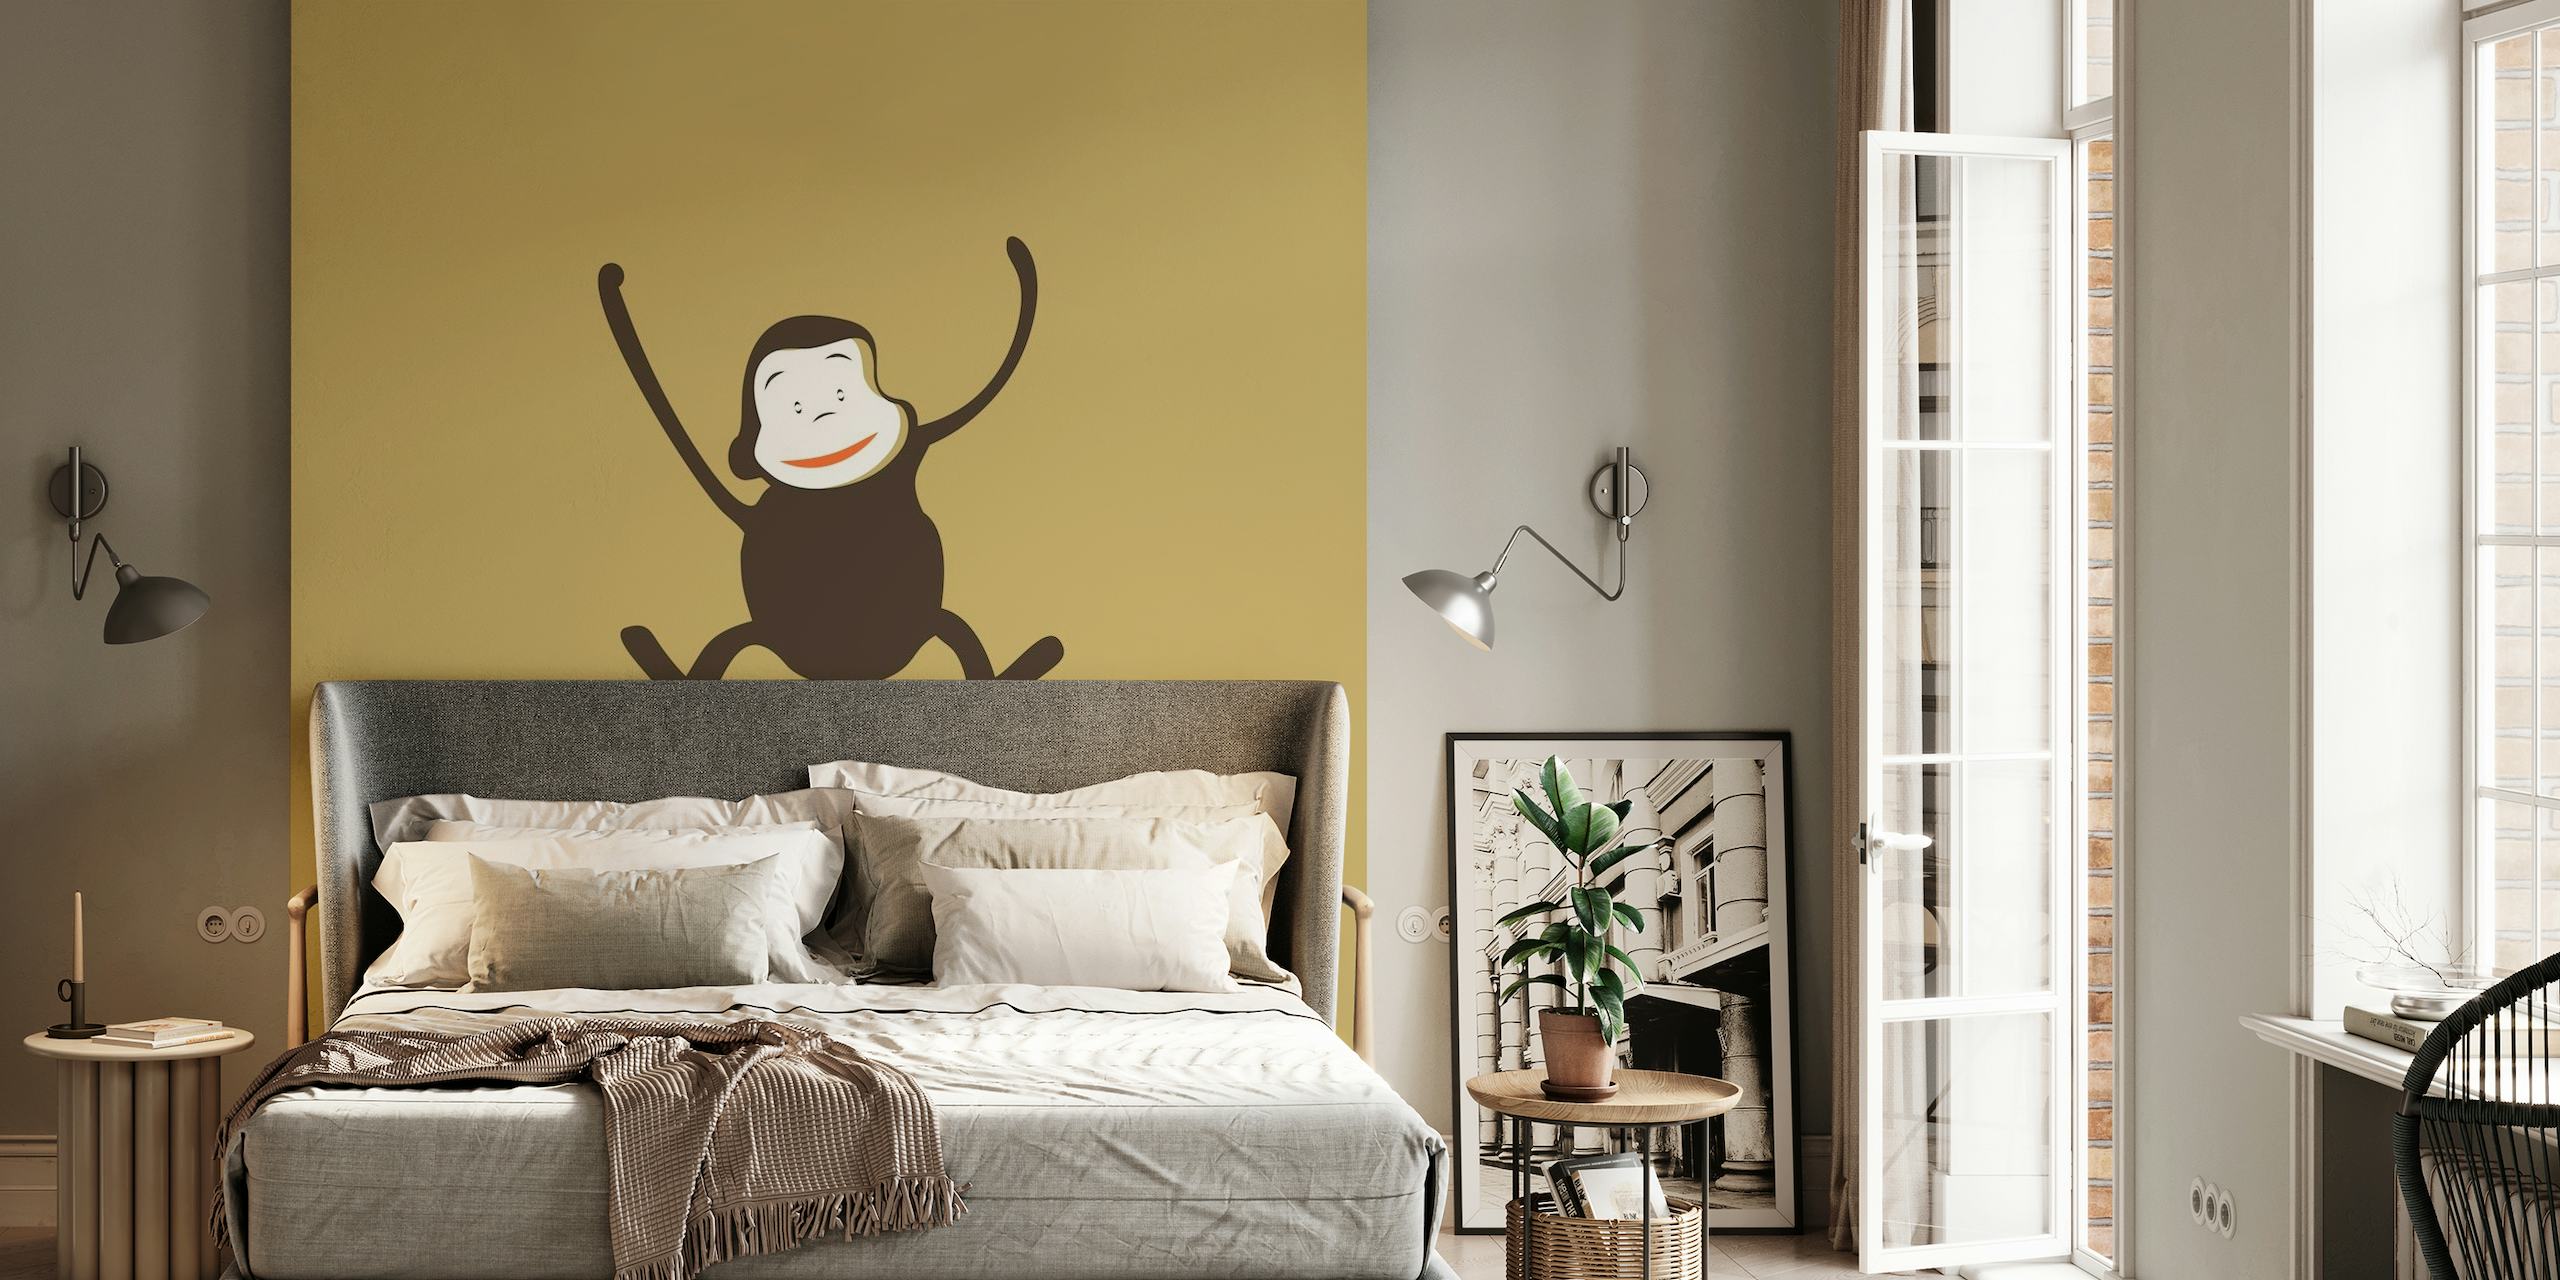 Illustratie van een speelse aap op een mokkabruine muurschildering als achtergrond